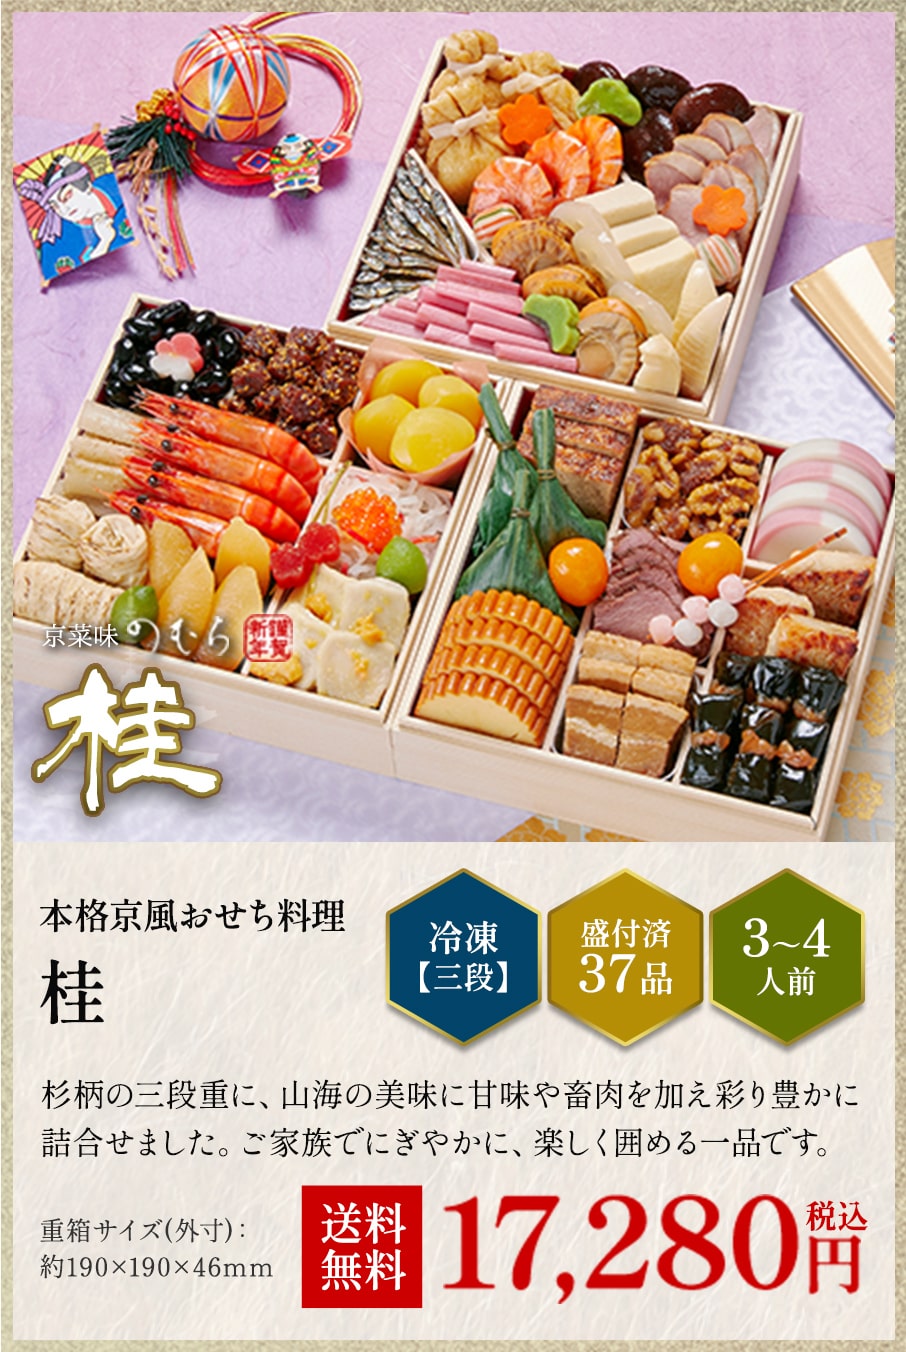 本格京風おせち料理「桂」冷凍三段 盛付済み37品 3~4人前 17,280円